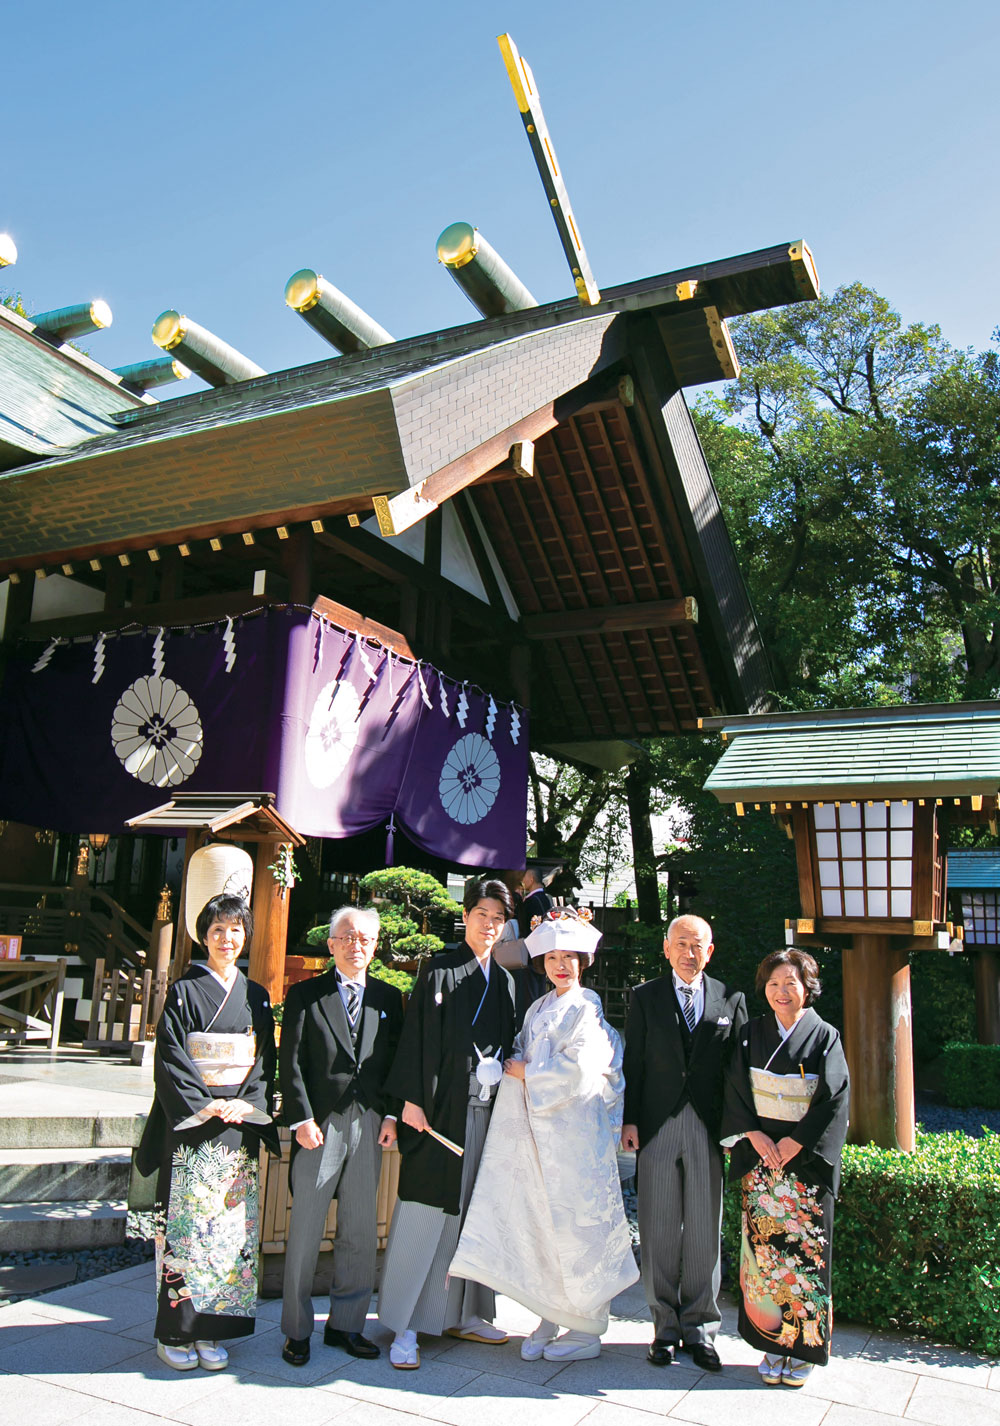 結婚式は、家族と喜びを共にし、ひとつの儀式として執り行いたいと考えていたふたり。歌舞伎観劇を好む新婦と、実家が雛具の会社を経営していた新郎は、着物に親しんでいることもあり、迷わず神前式を希望しました。神社仏閣にも精通している新婦が、日頃から参拝していた神社が「東京大神宮」。都心にあるコンパクトな神社ながら威厳に満ちた雰囲気、美しい祝婚歌の調べで舞う「豊寿舞」などの貴重な儀式も、この神社での神前結婚式を決めたポイントに。
披露宴は、両家の両親との小さな祝宴でしたが、定番のケーキ入刀や水合わせの儀、またお色直しも行い、家族だけの食事会にとどまらない演出も新郎新婦のこだわり。両親たちからのスピーチではふたりの幼い頃からの思い出が語られ、新婦母によるサプライズ演奏もあって、笑みが絶えないアットホームなひとときを叶えることができました。
